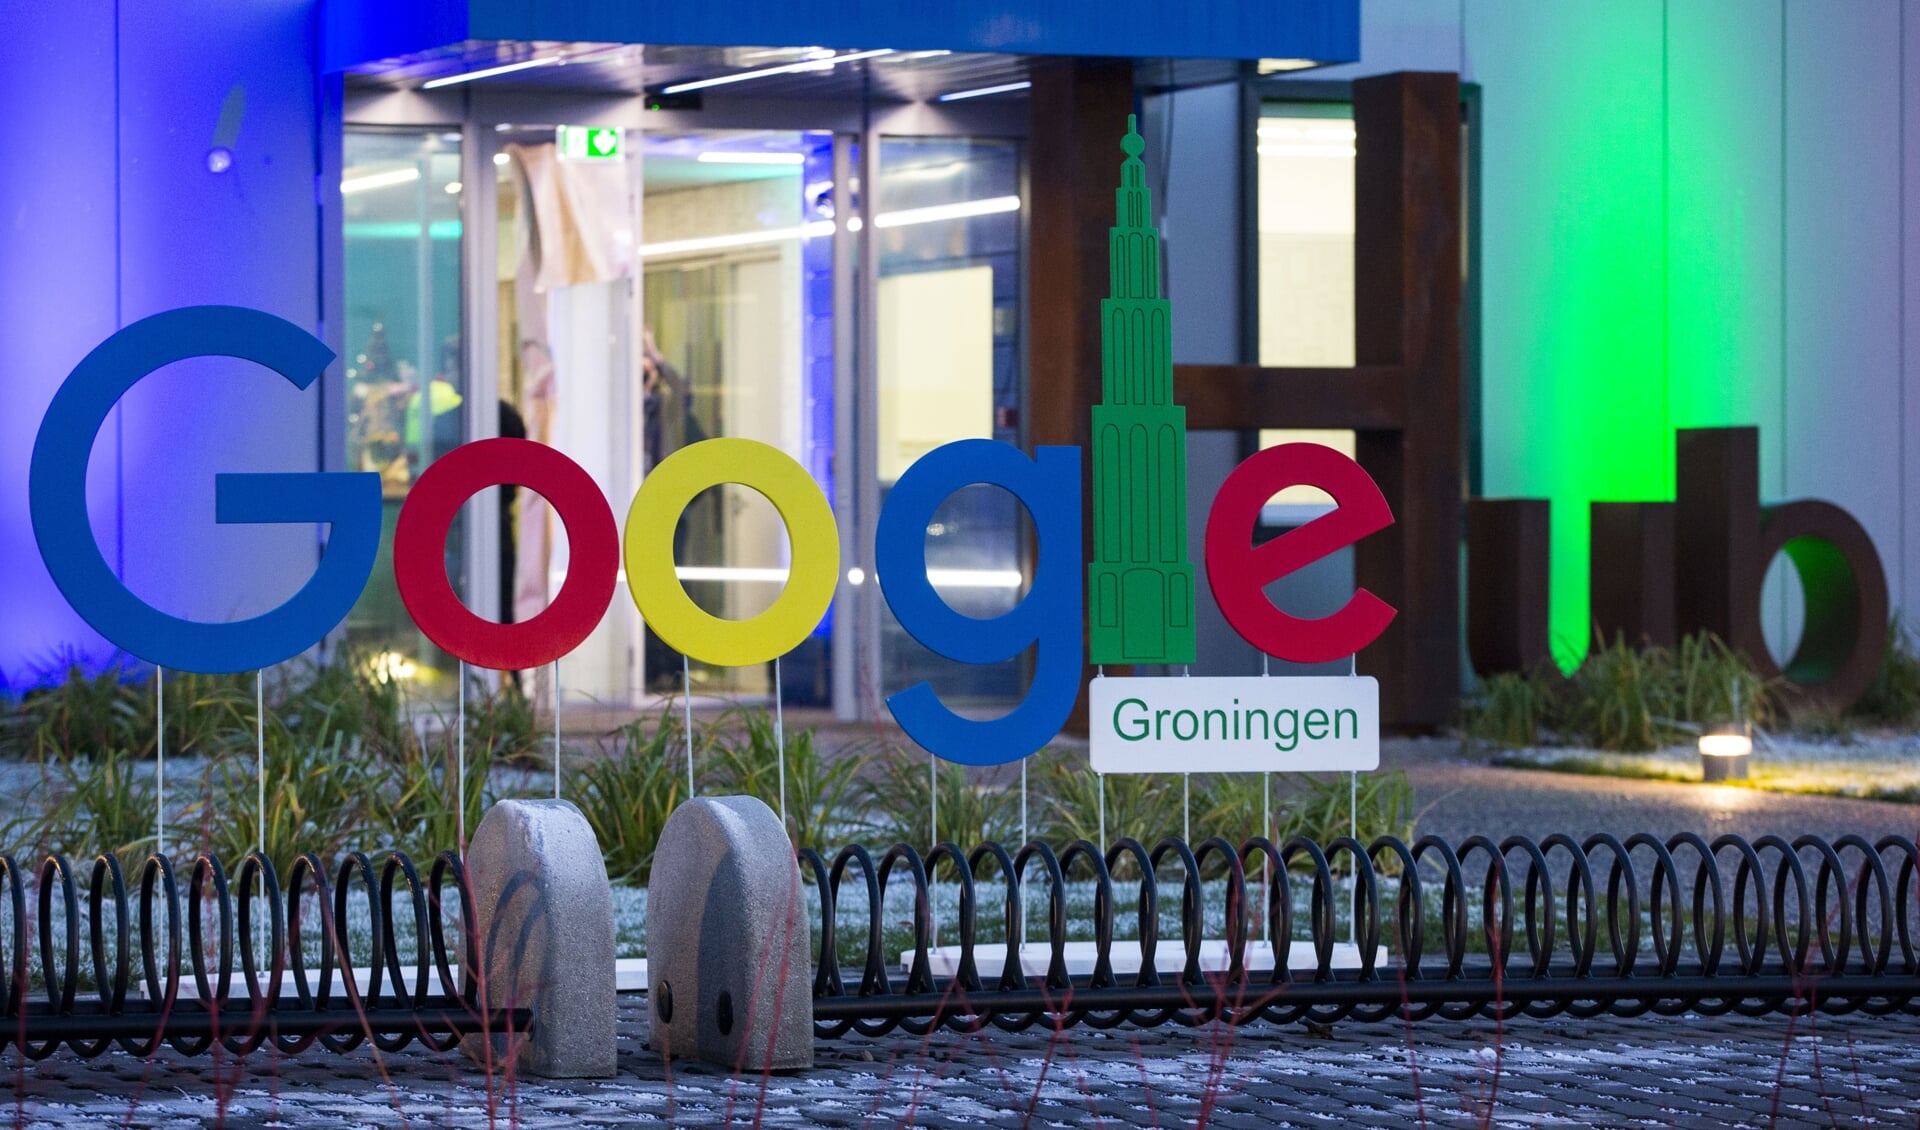 2016-12-06 18:13:00 EEMSHAVEN - Het Google Groningen logo voor het kantoorgebouw tijdens de opening van het nieuwe Google datacenter in Eemshaven. ANP VINCENT JANNINK